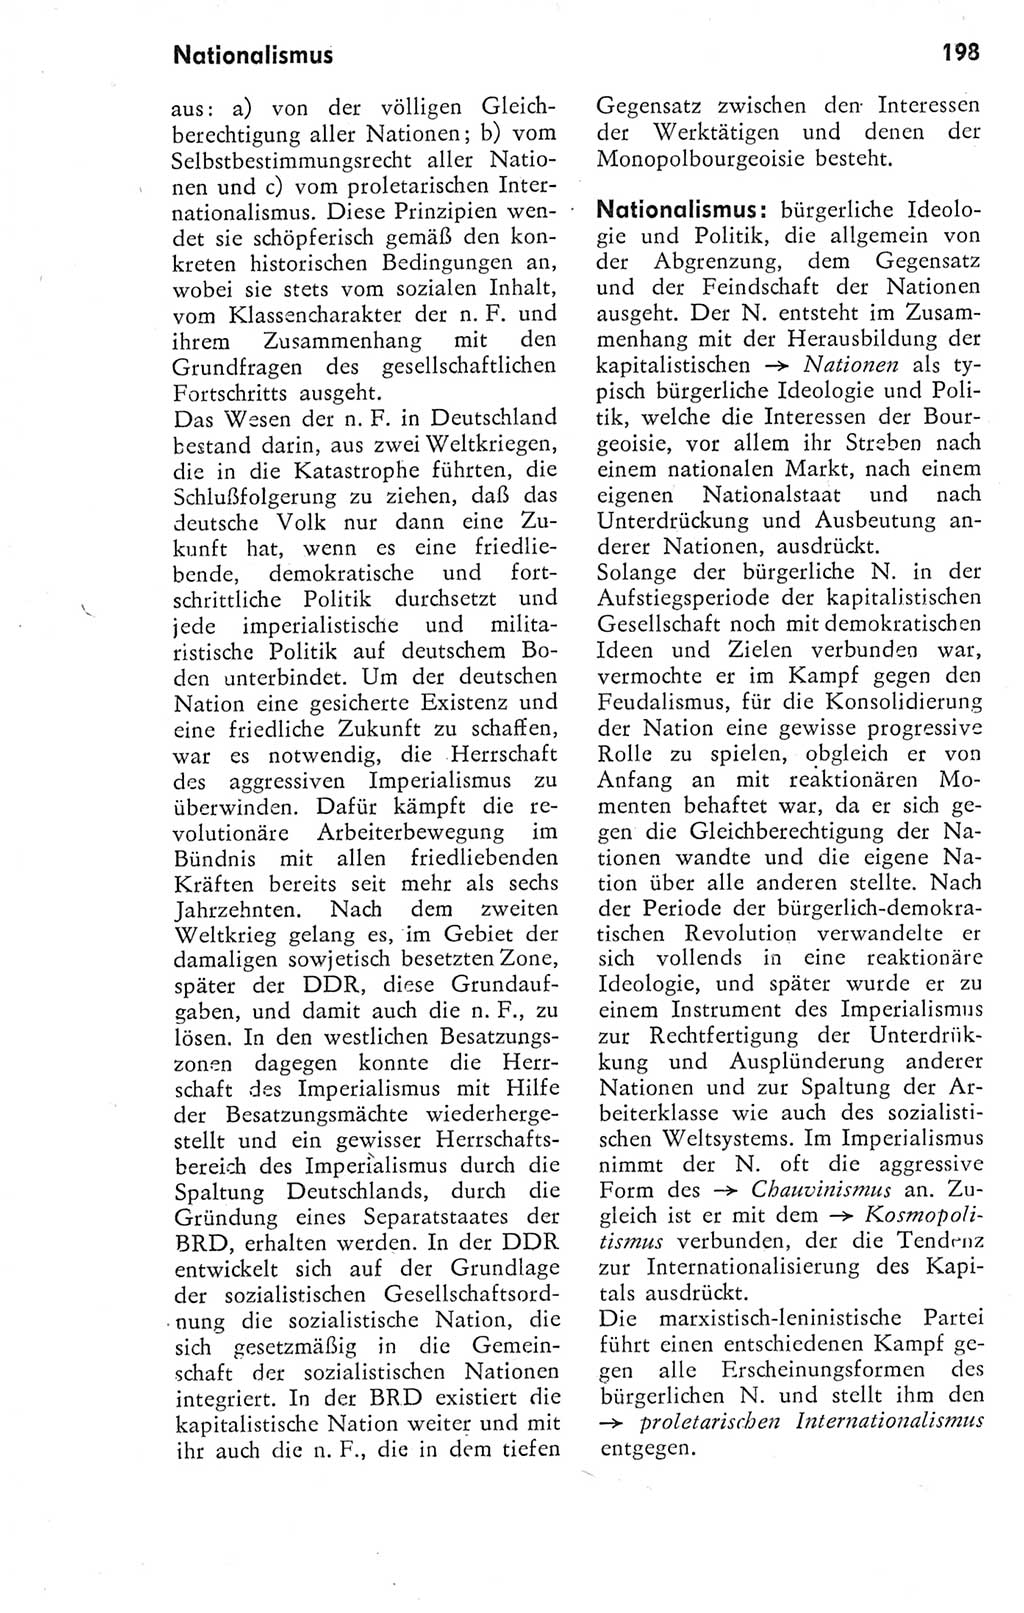 Kleines Wörterbuch der marxistisch-leninistischen Philosophie [Deutsche Demokratische Republik (DDR)] 1974, Seite 198 (Kl. Wb. ML Phil. DDR 1974, S. 198)